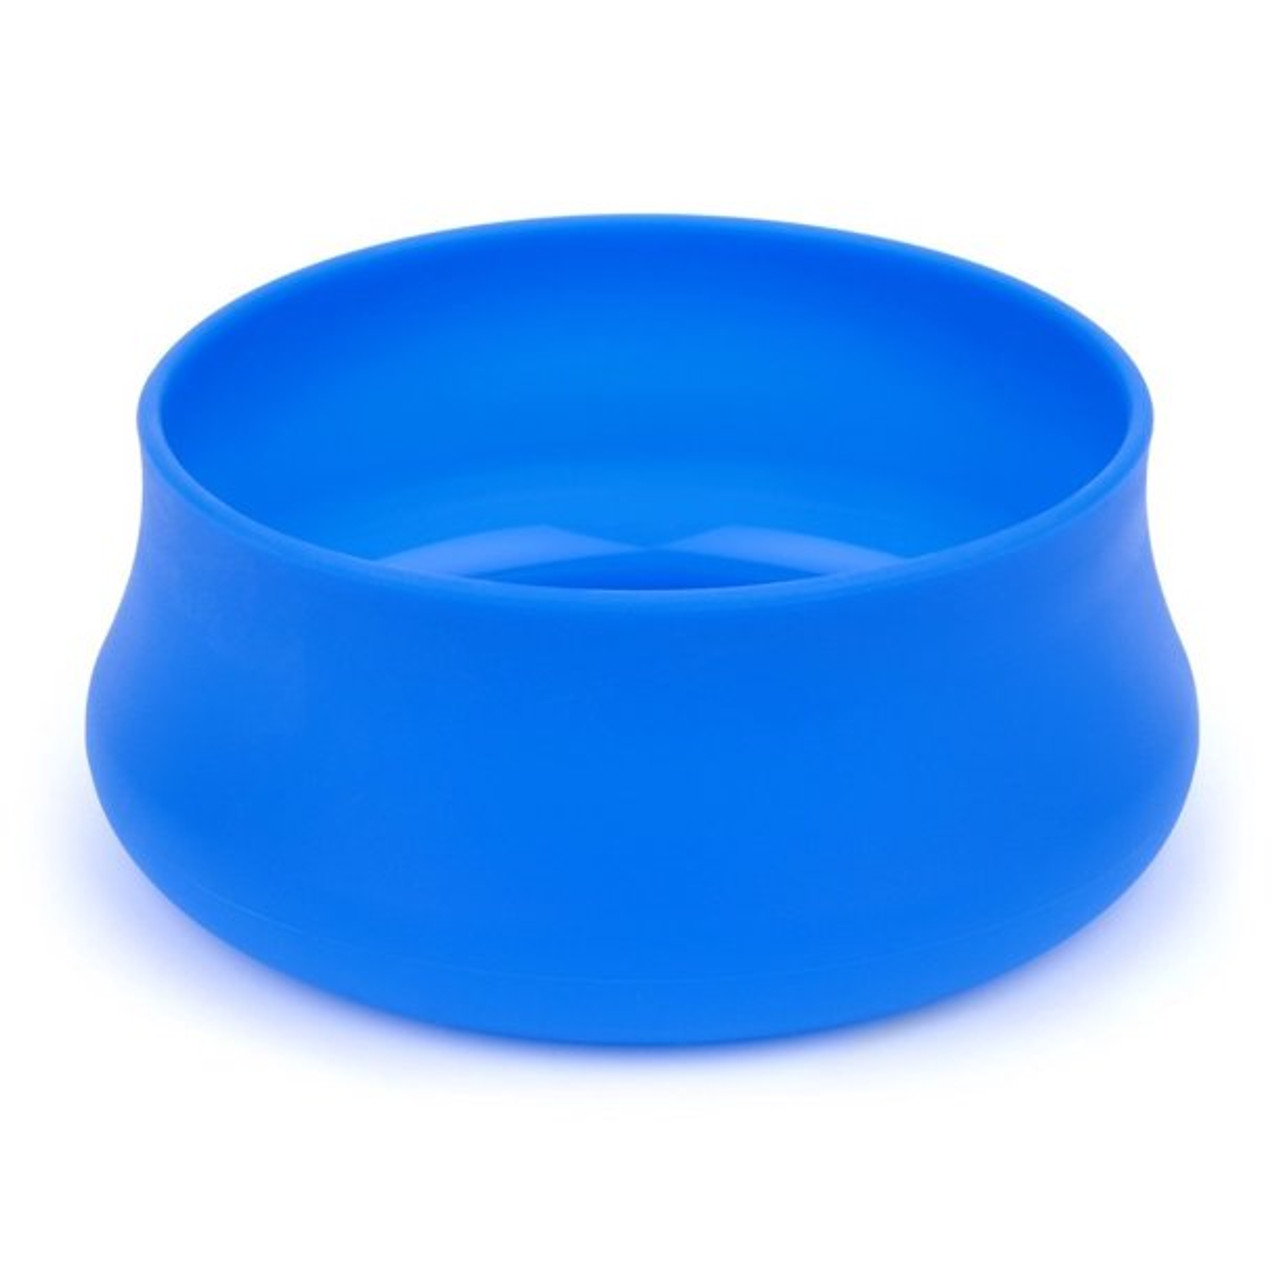 Guyot Squishy Dog Bowl Blue 32oz